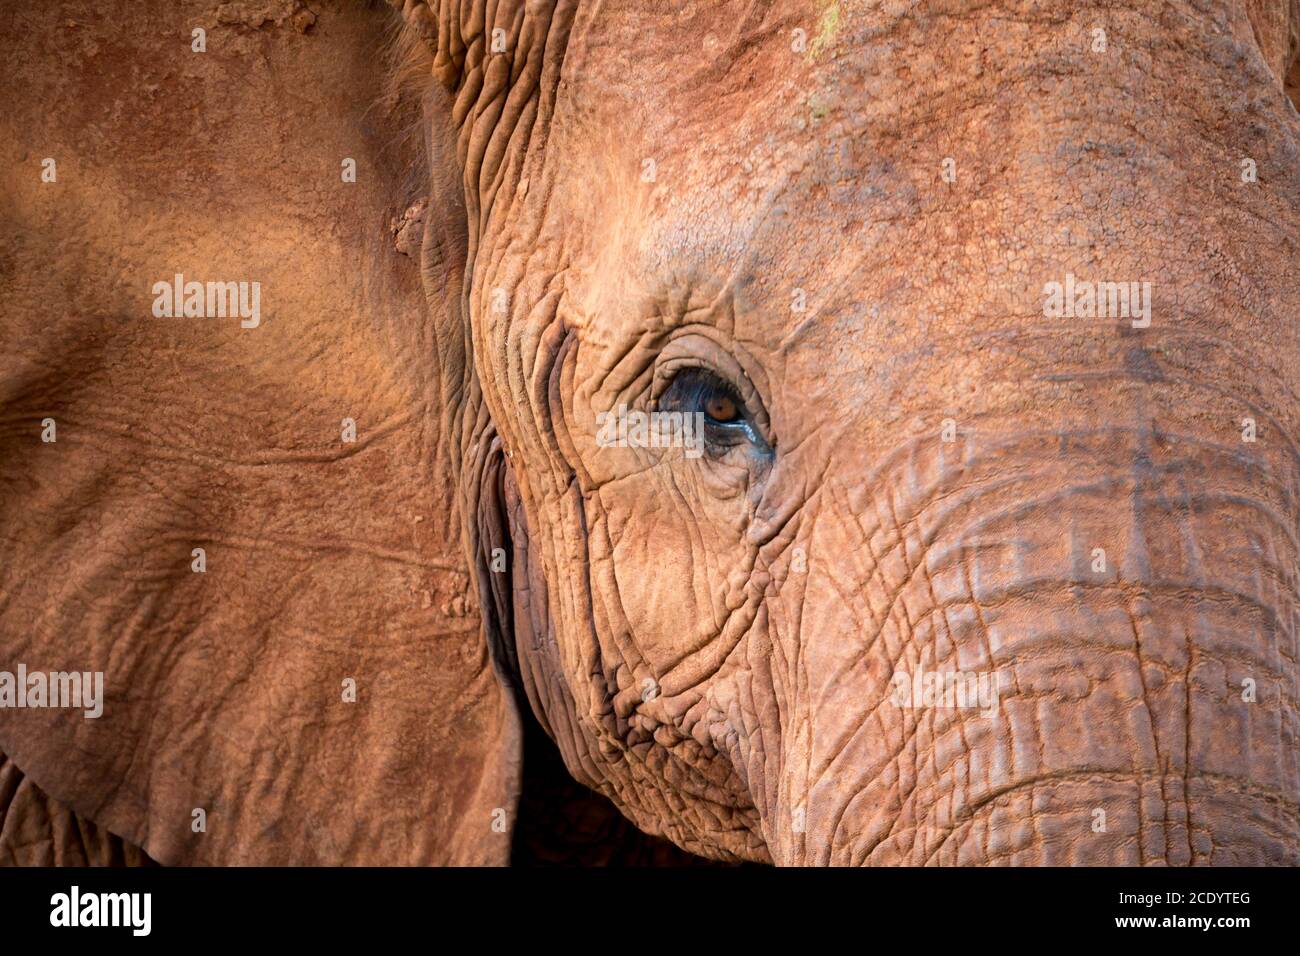 La cara de un elefante rojo grande Foto de stock